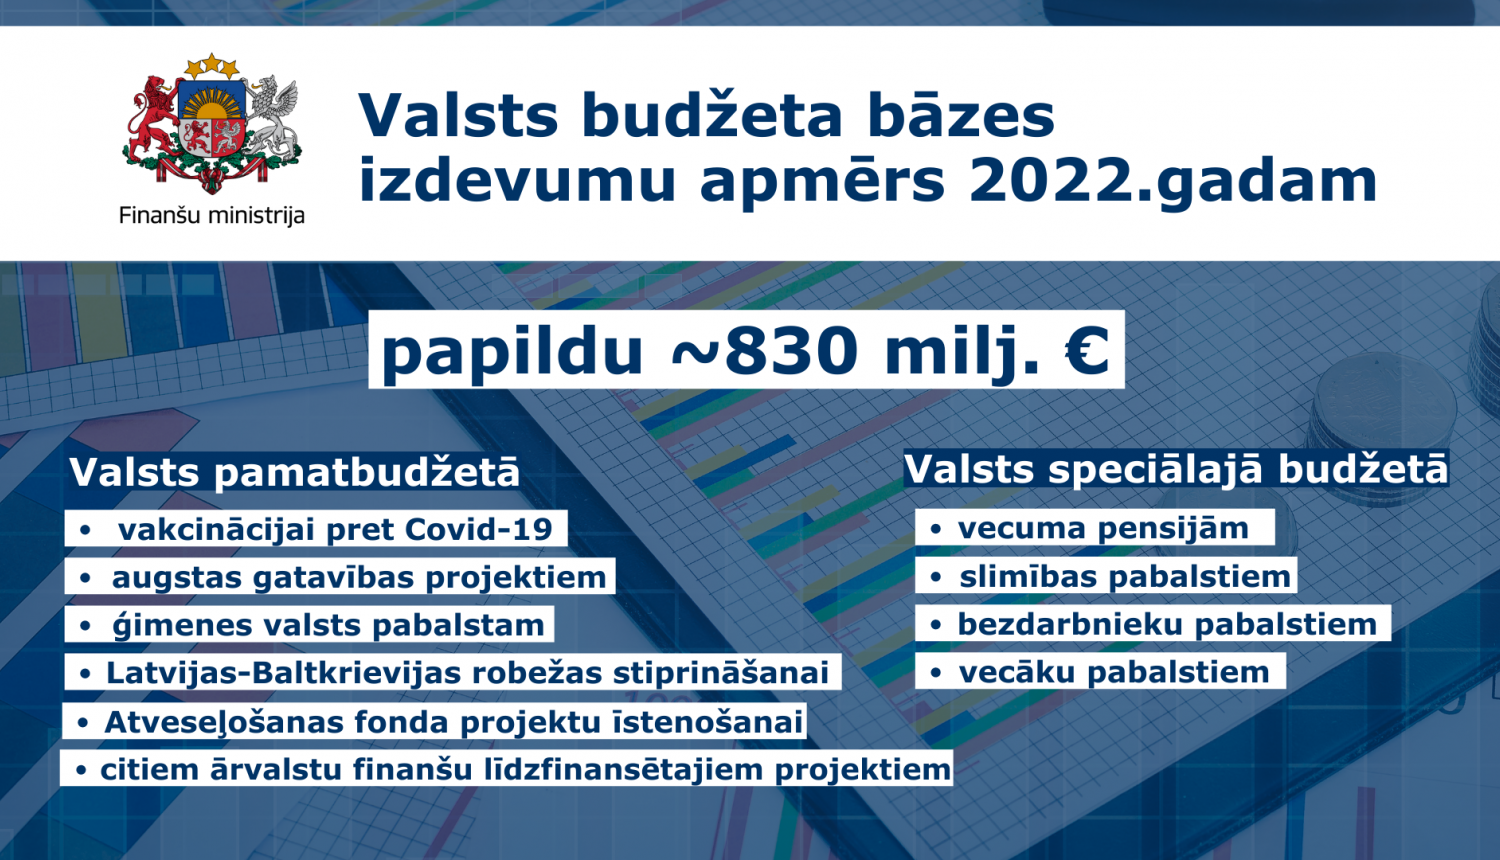 Grafiks: Valsts budžeta bāzes izdevumu apmērs 2022. gadam